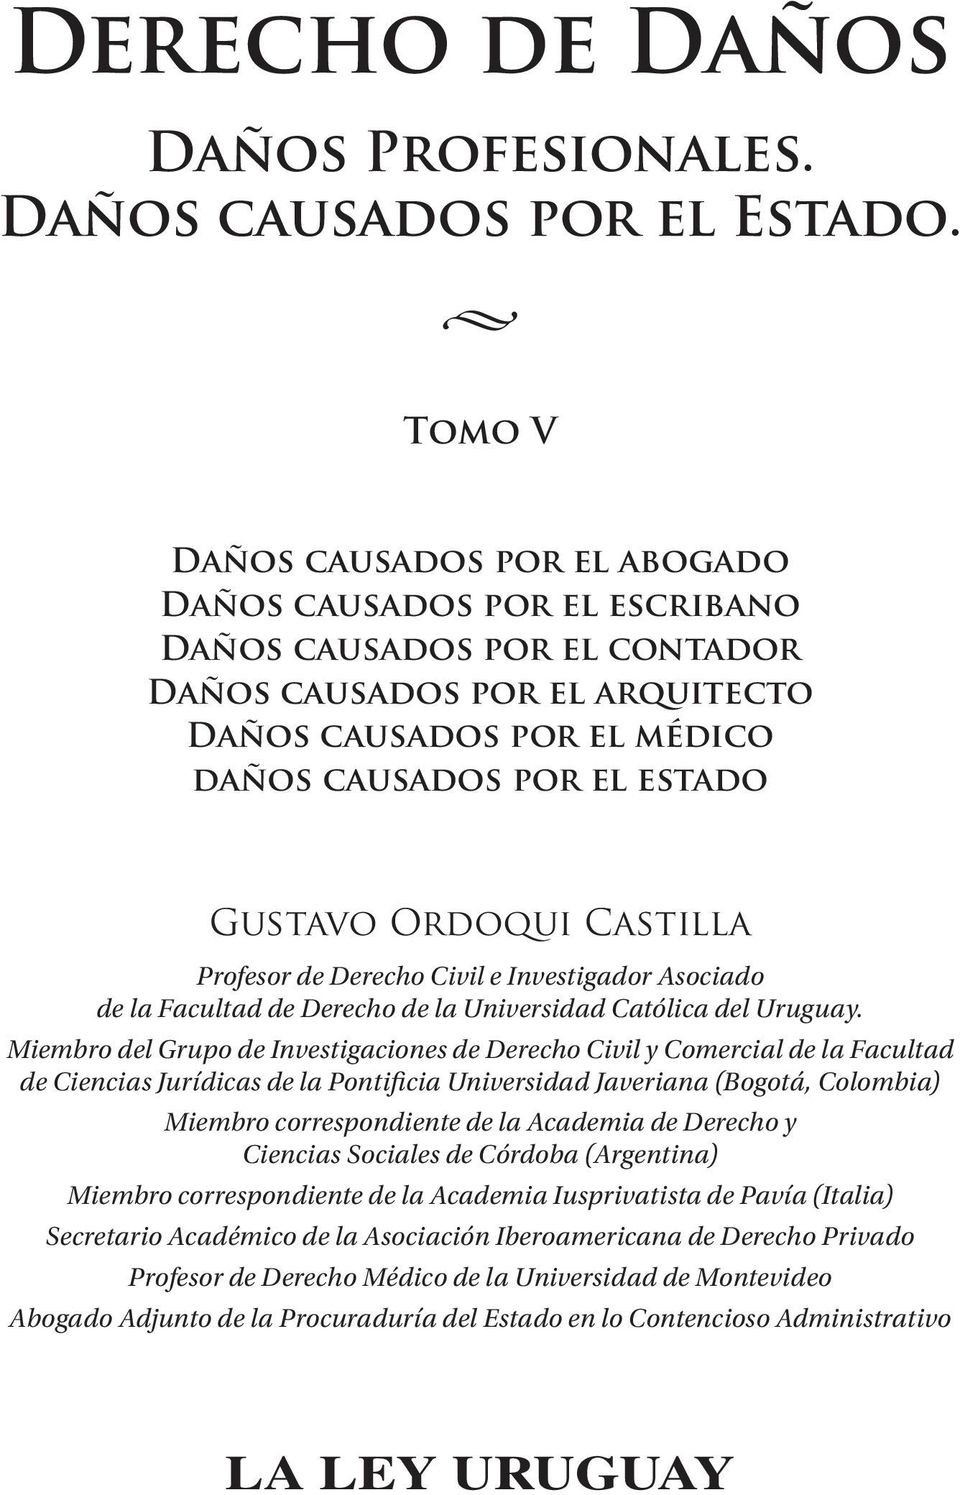 Gustavo Ordoqui Castilla Profesor de Derecho Civil e Investigador Asociado de la Facultad de Derecho de la Universidad Católica del Uruguay.